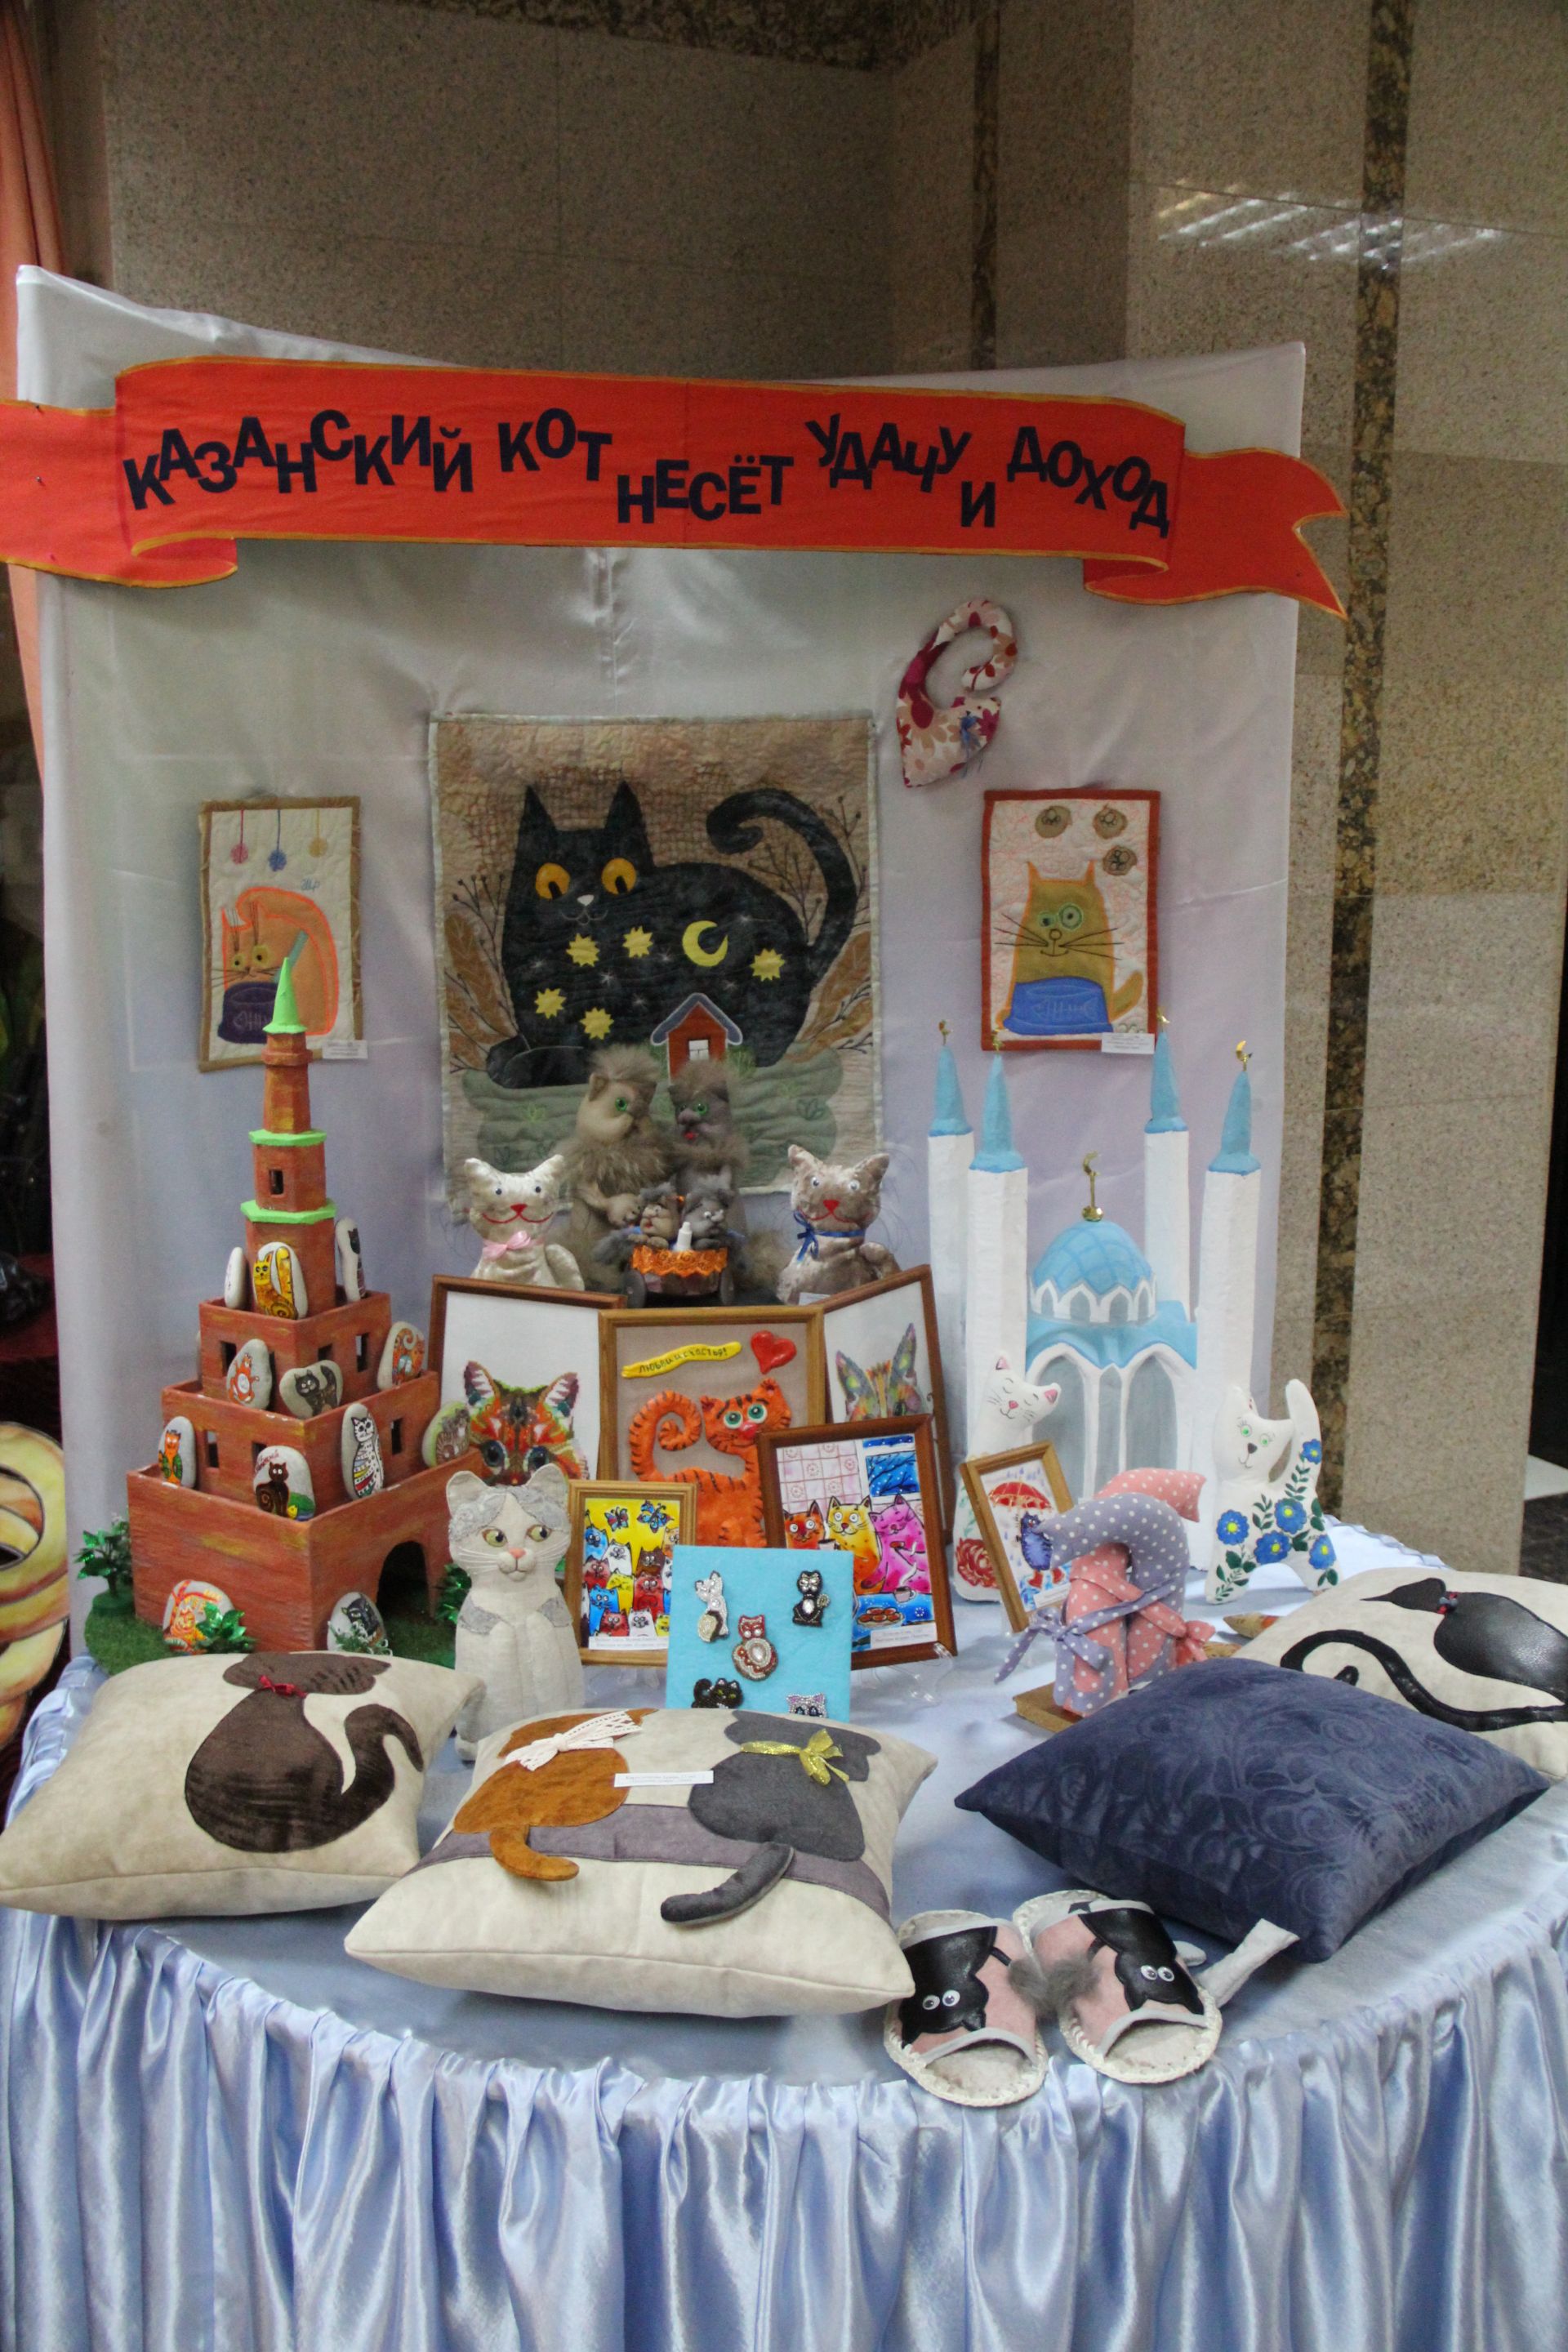 В Болгаре прошёл фестиваль-конкурс детского народного творчества «Без бергэ»